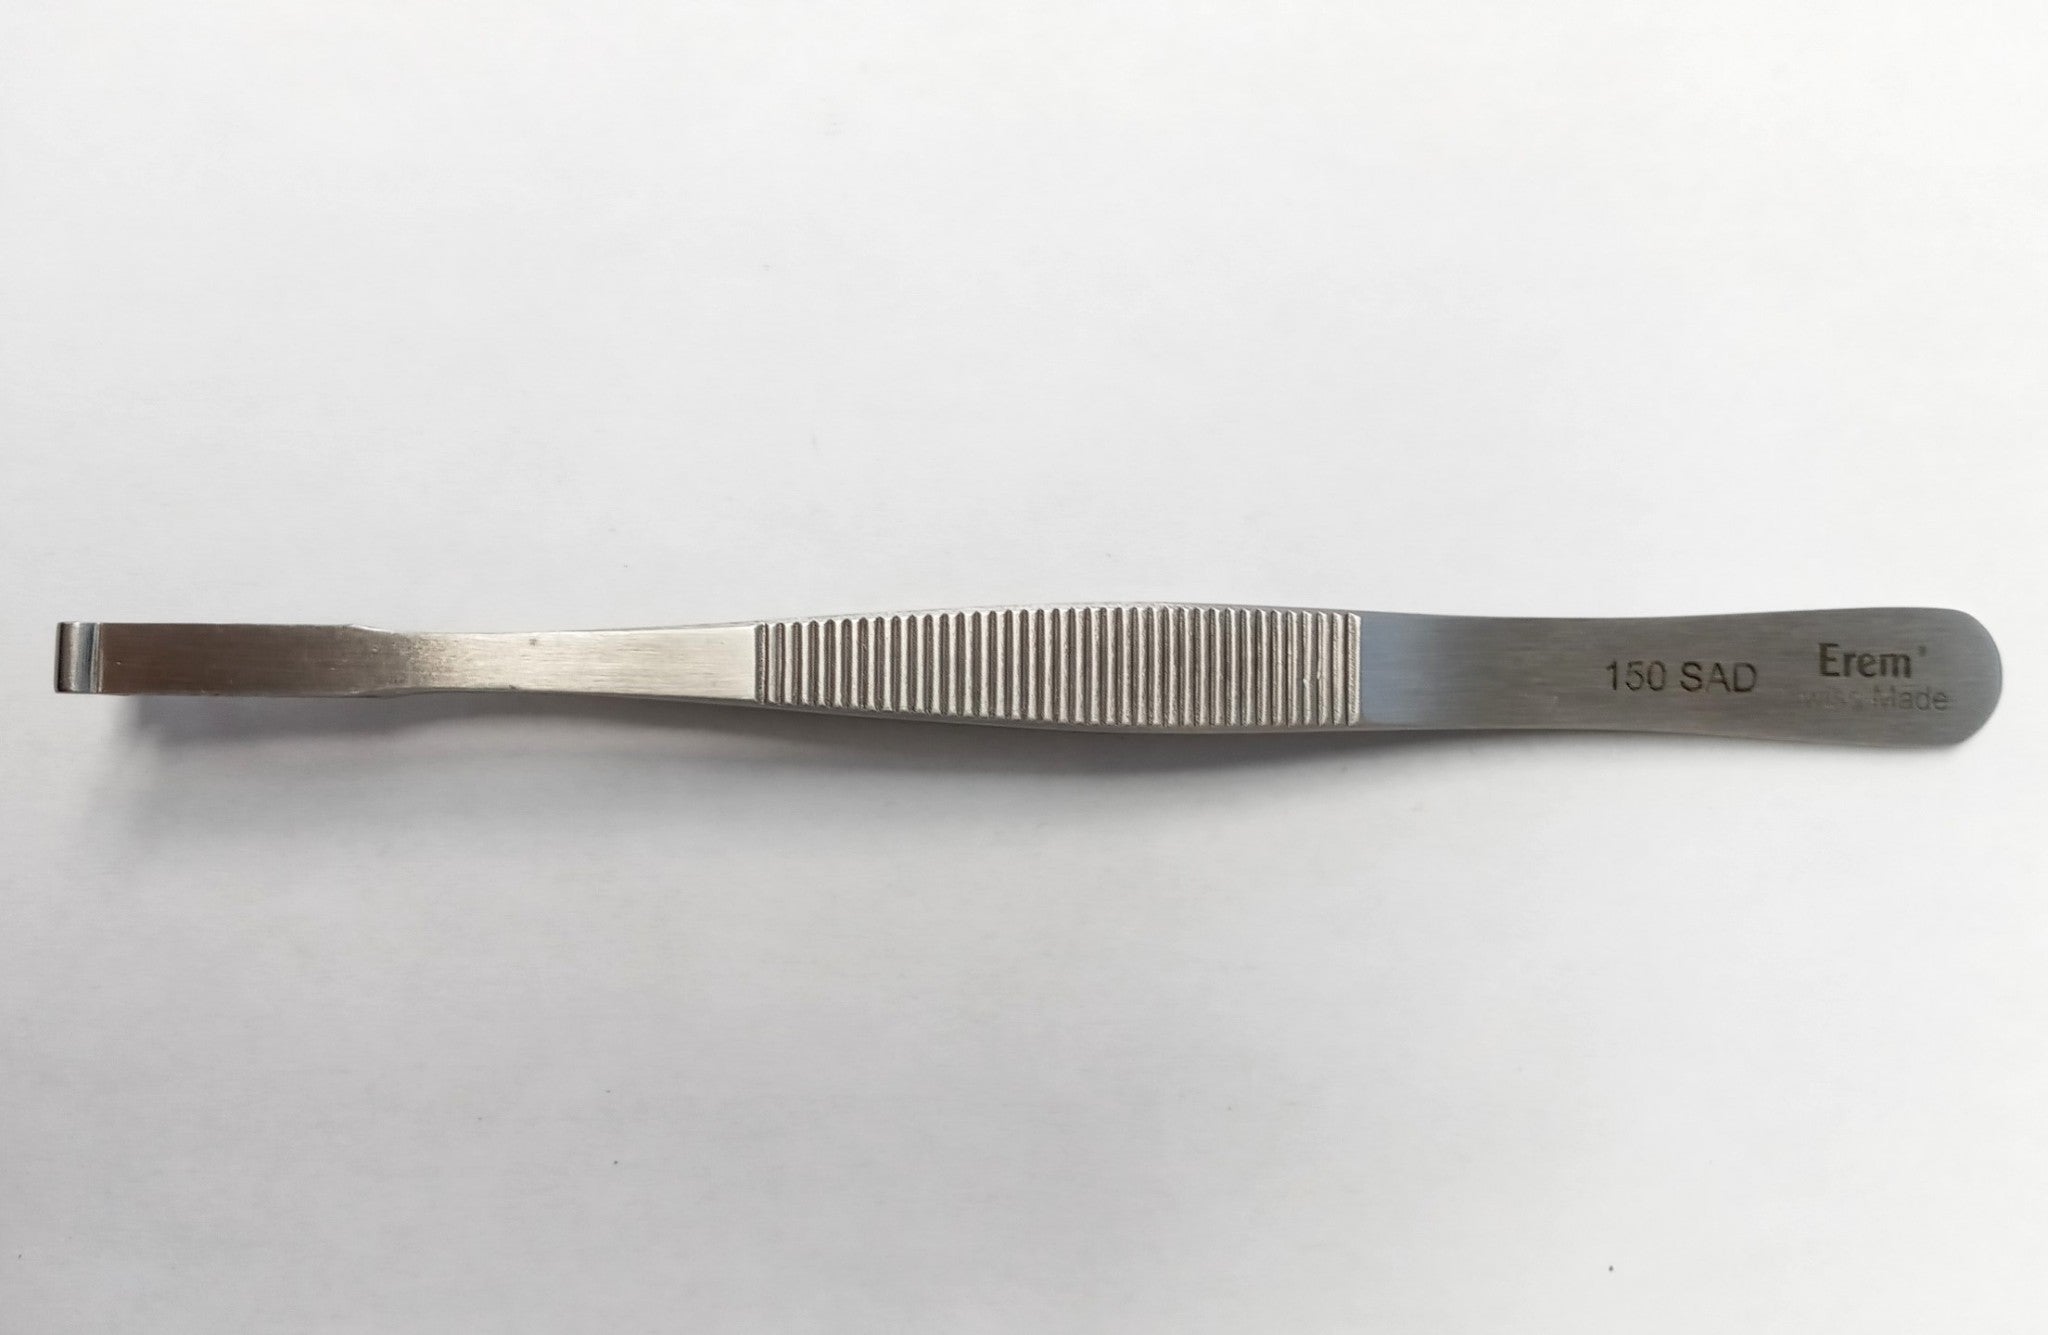 Weller Erem 150SAD SMD Tweezers with Round Tips, dia. 1.5 – 3 mm/.059 –.118 Inch